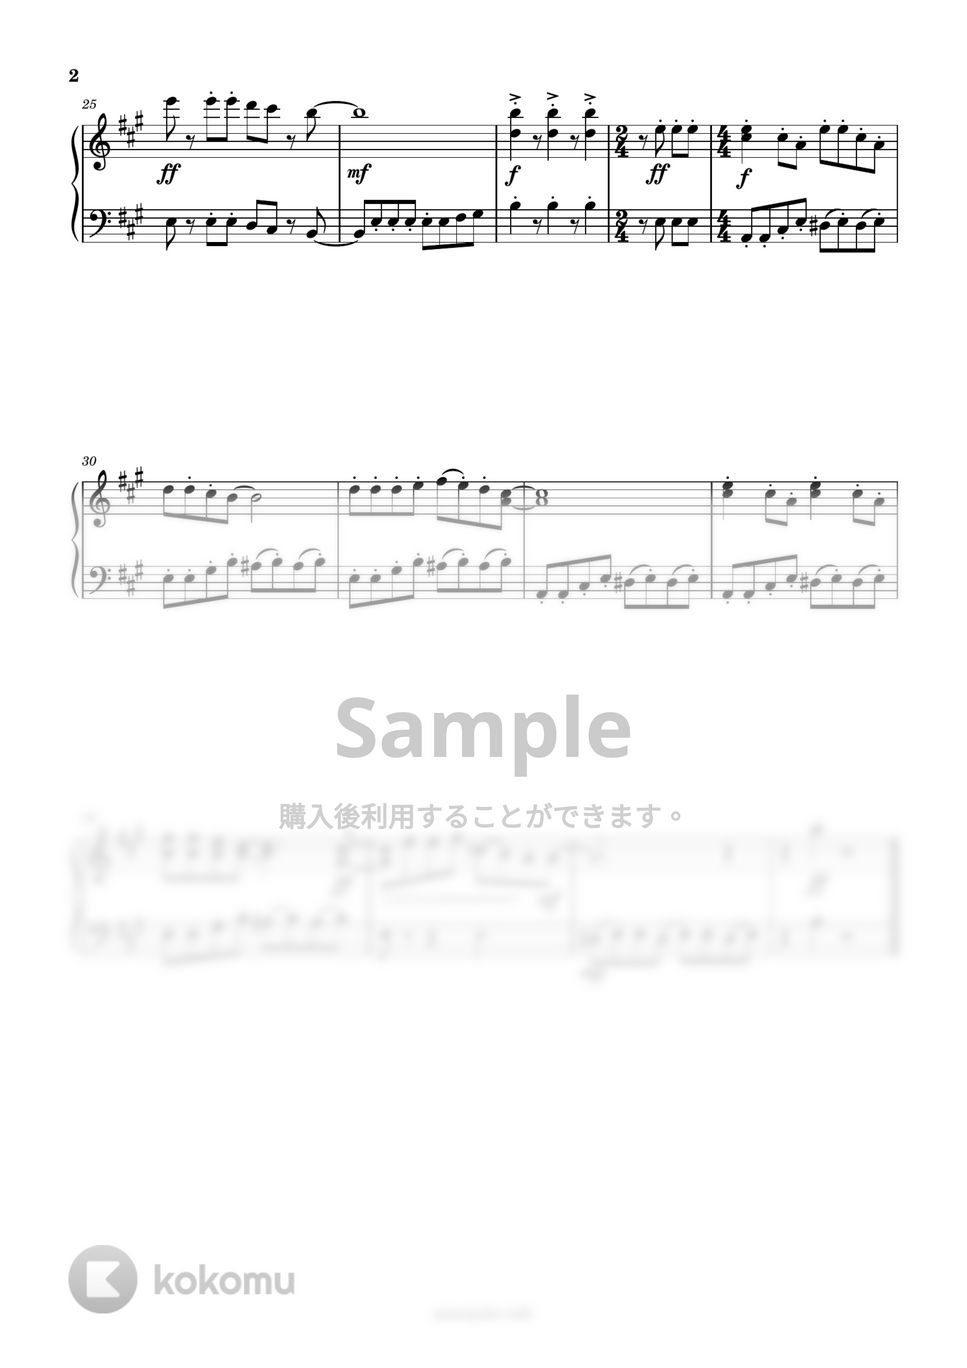 久石譲 - ねこバス (簡単楽譜) by ピアノ塾